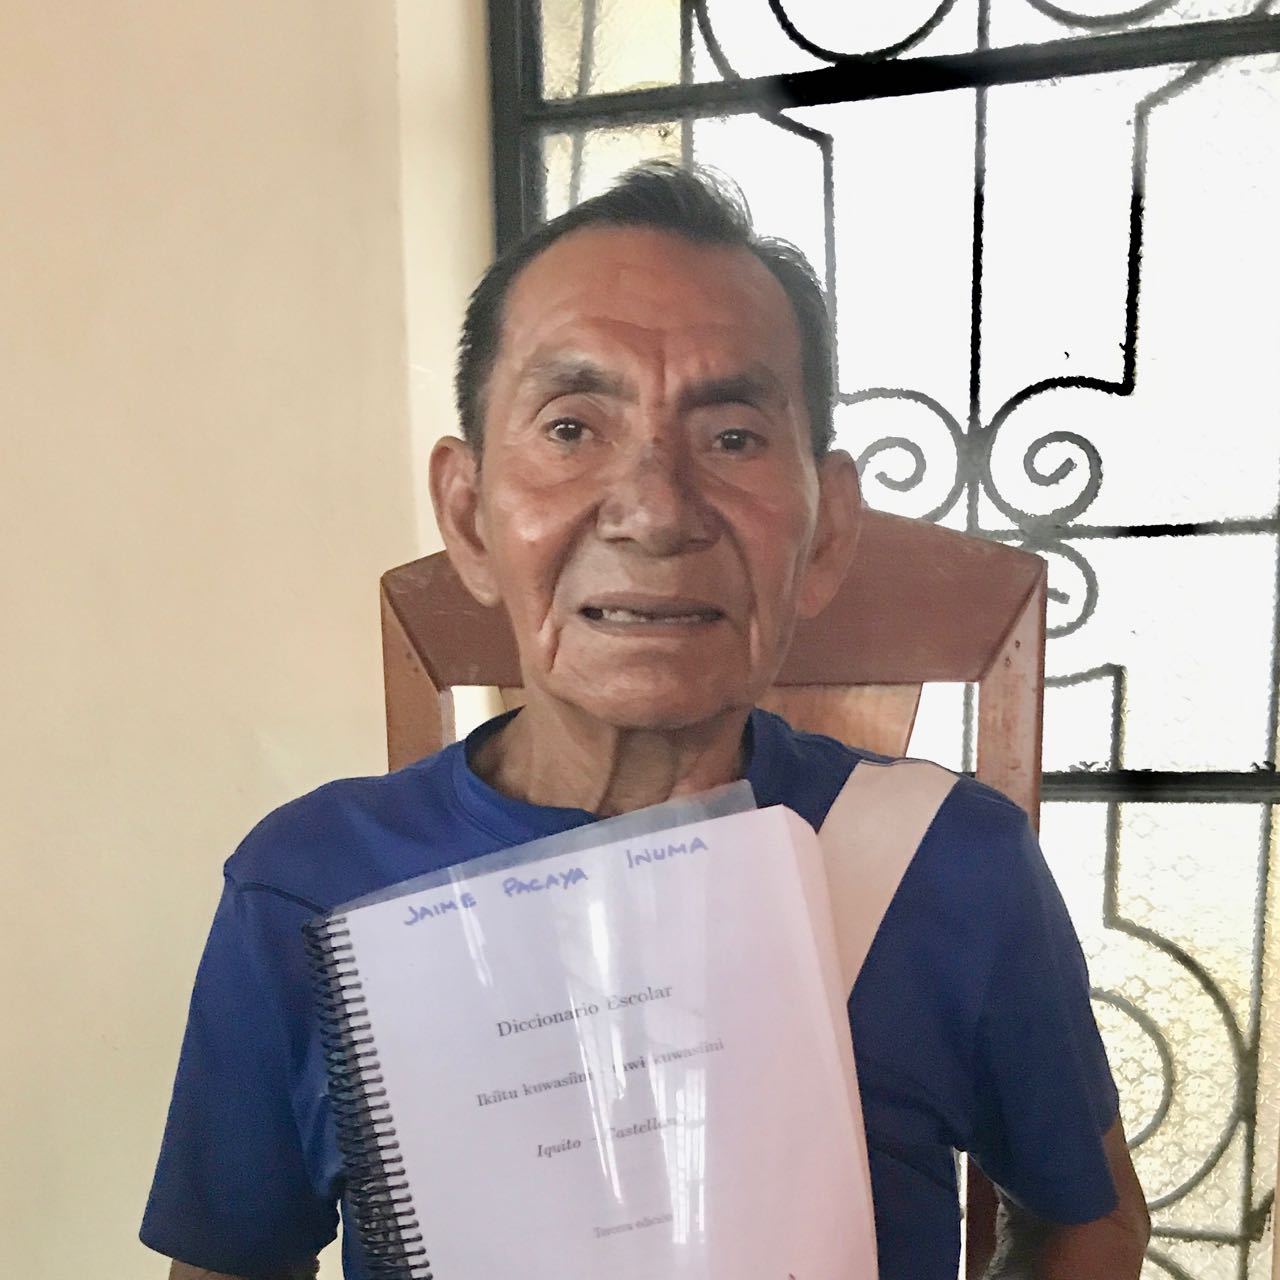 Jaime Pacaya Inuma 2019